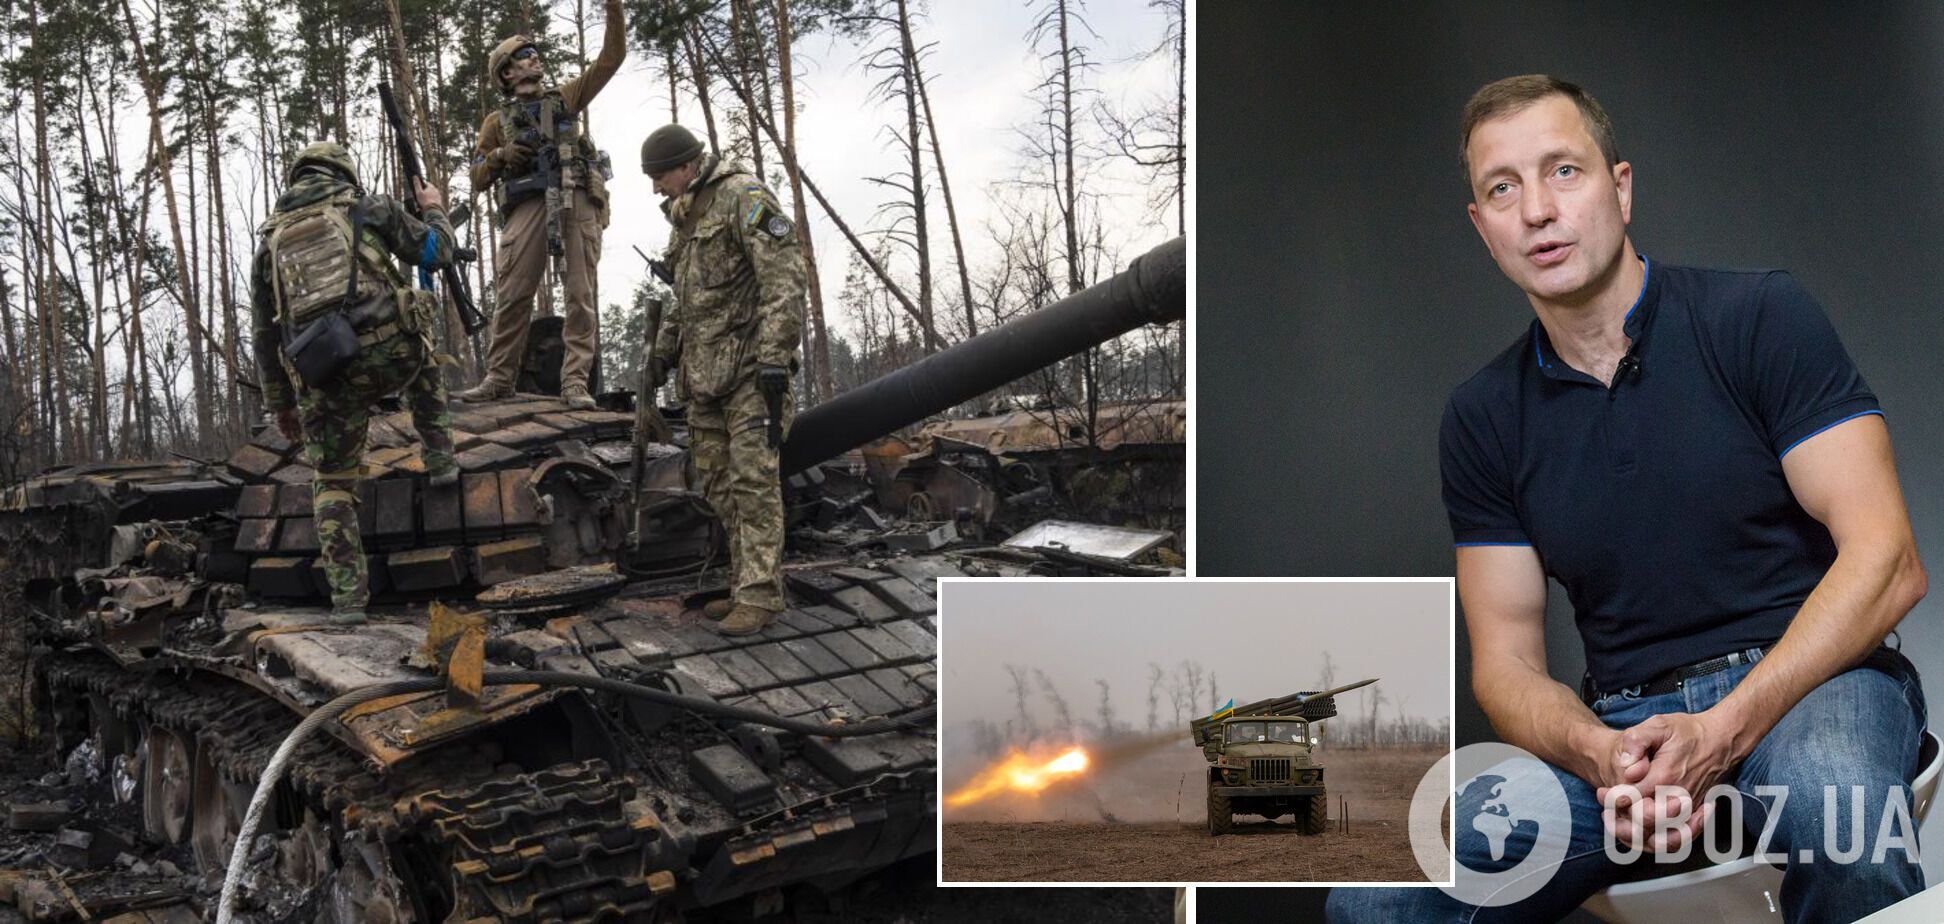 Валентин Бадрак: развитие дальнейших событий в войне зависит от того, насколько мощное оружие Украине предоставит Запад